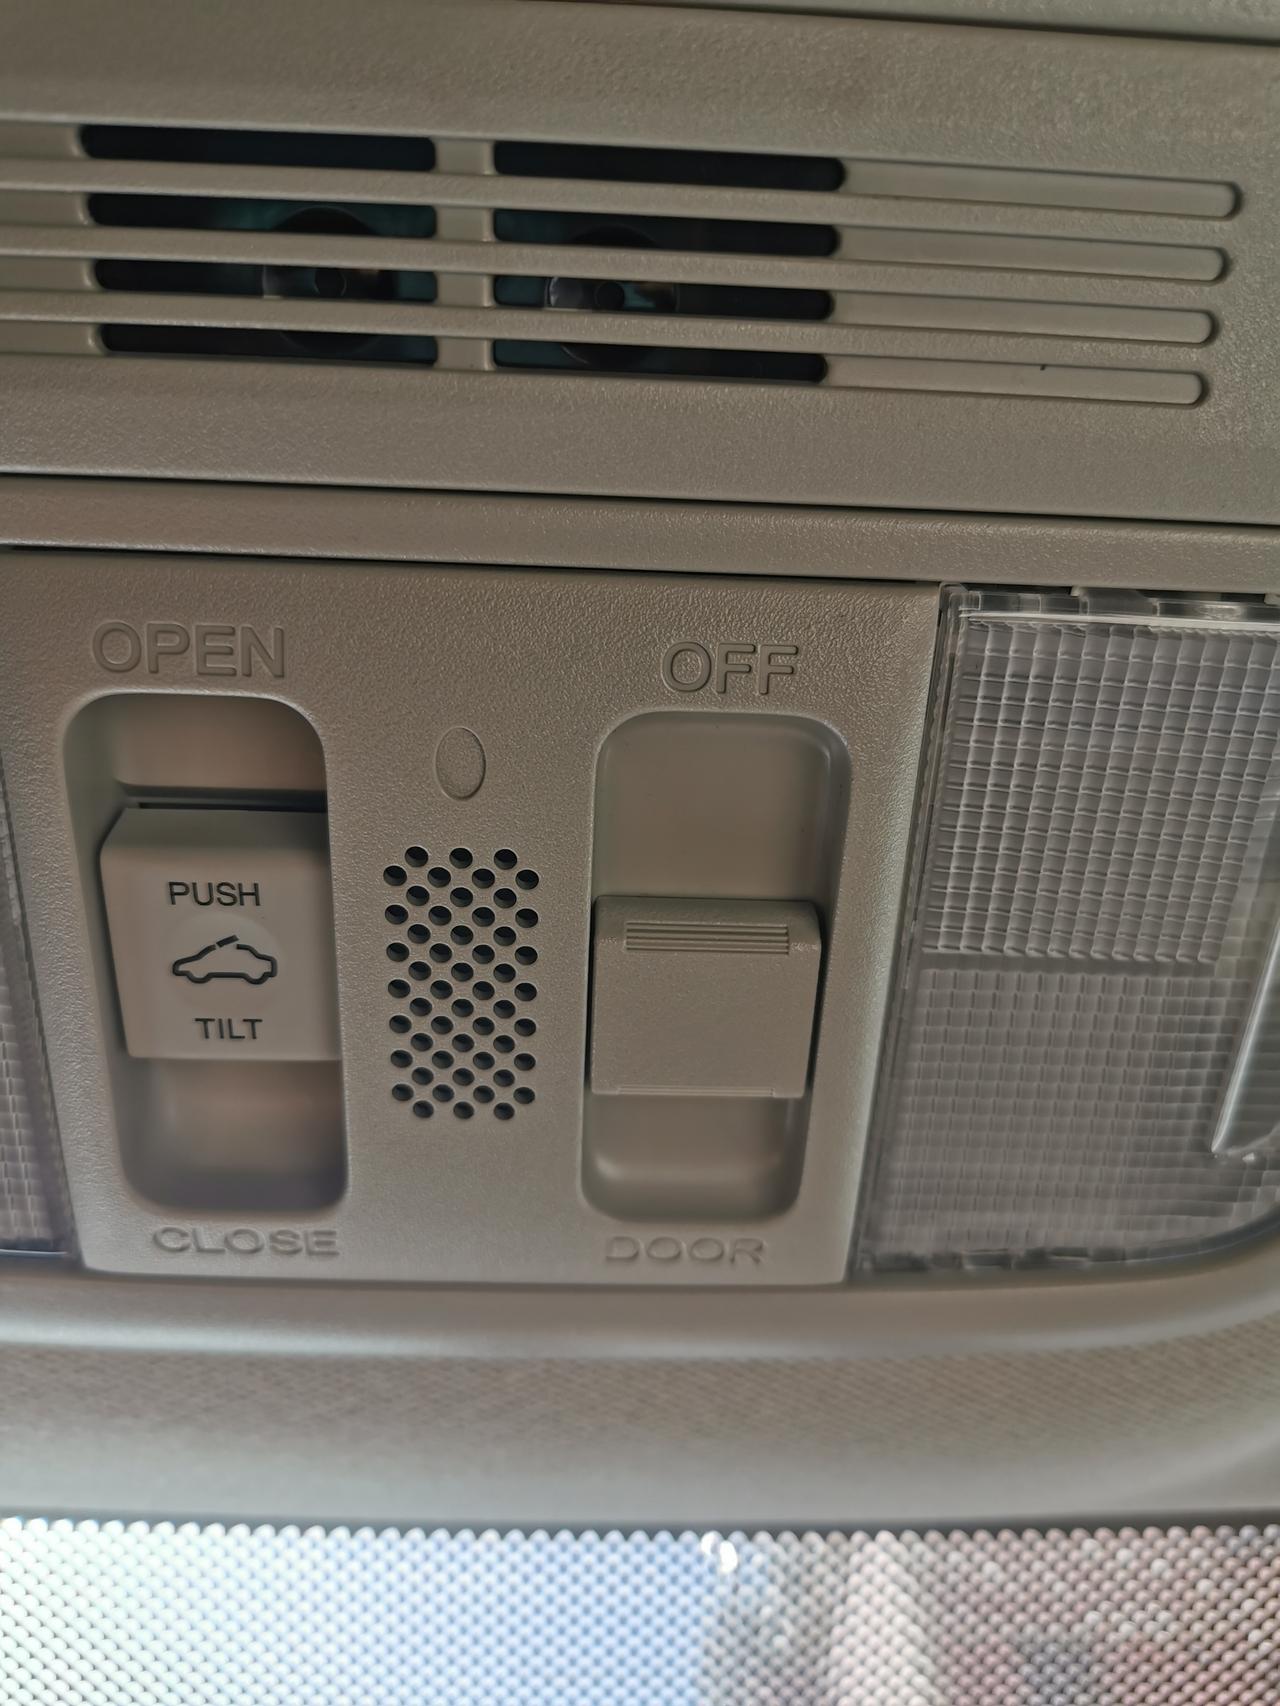 请问车友们，十代思域天窗右侧这个按钮是做什么的？前面是door，后面是off这个